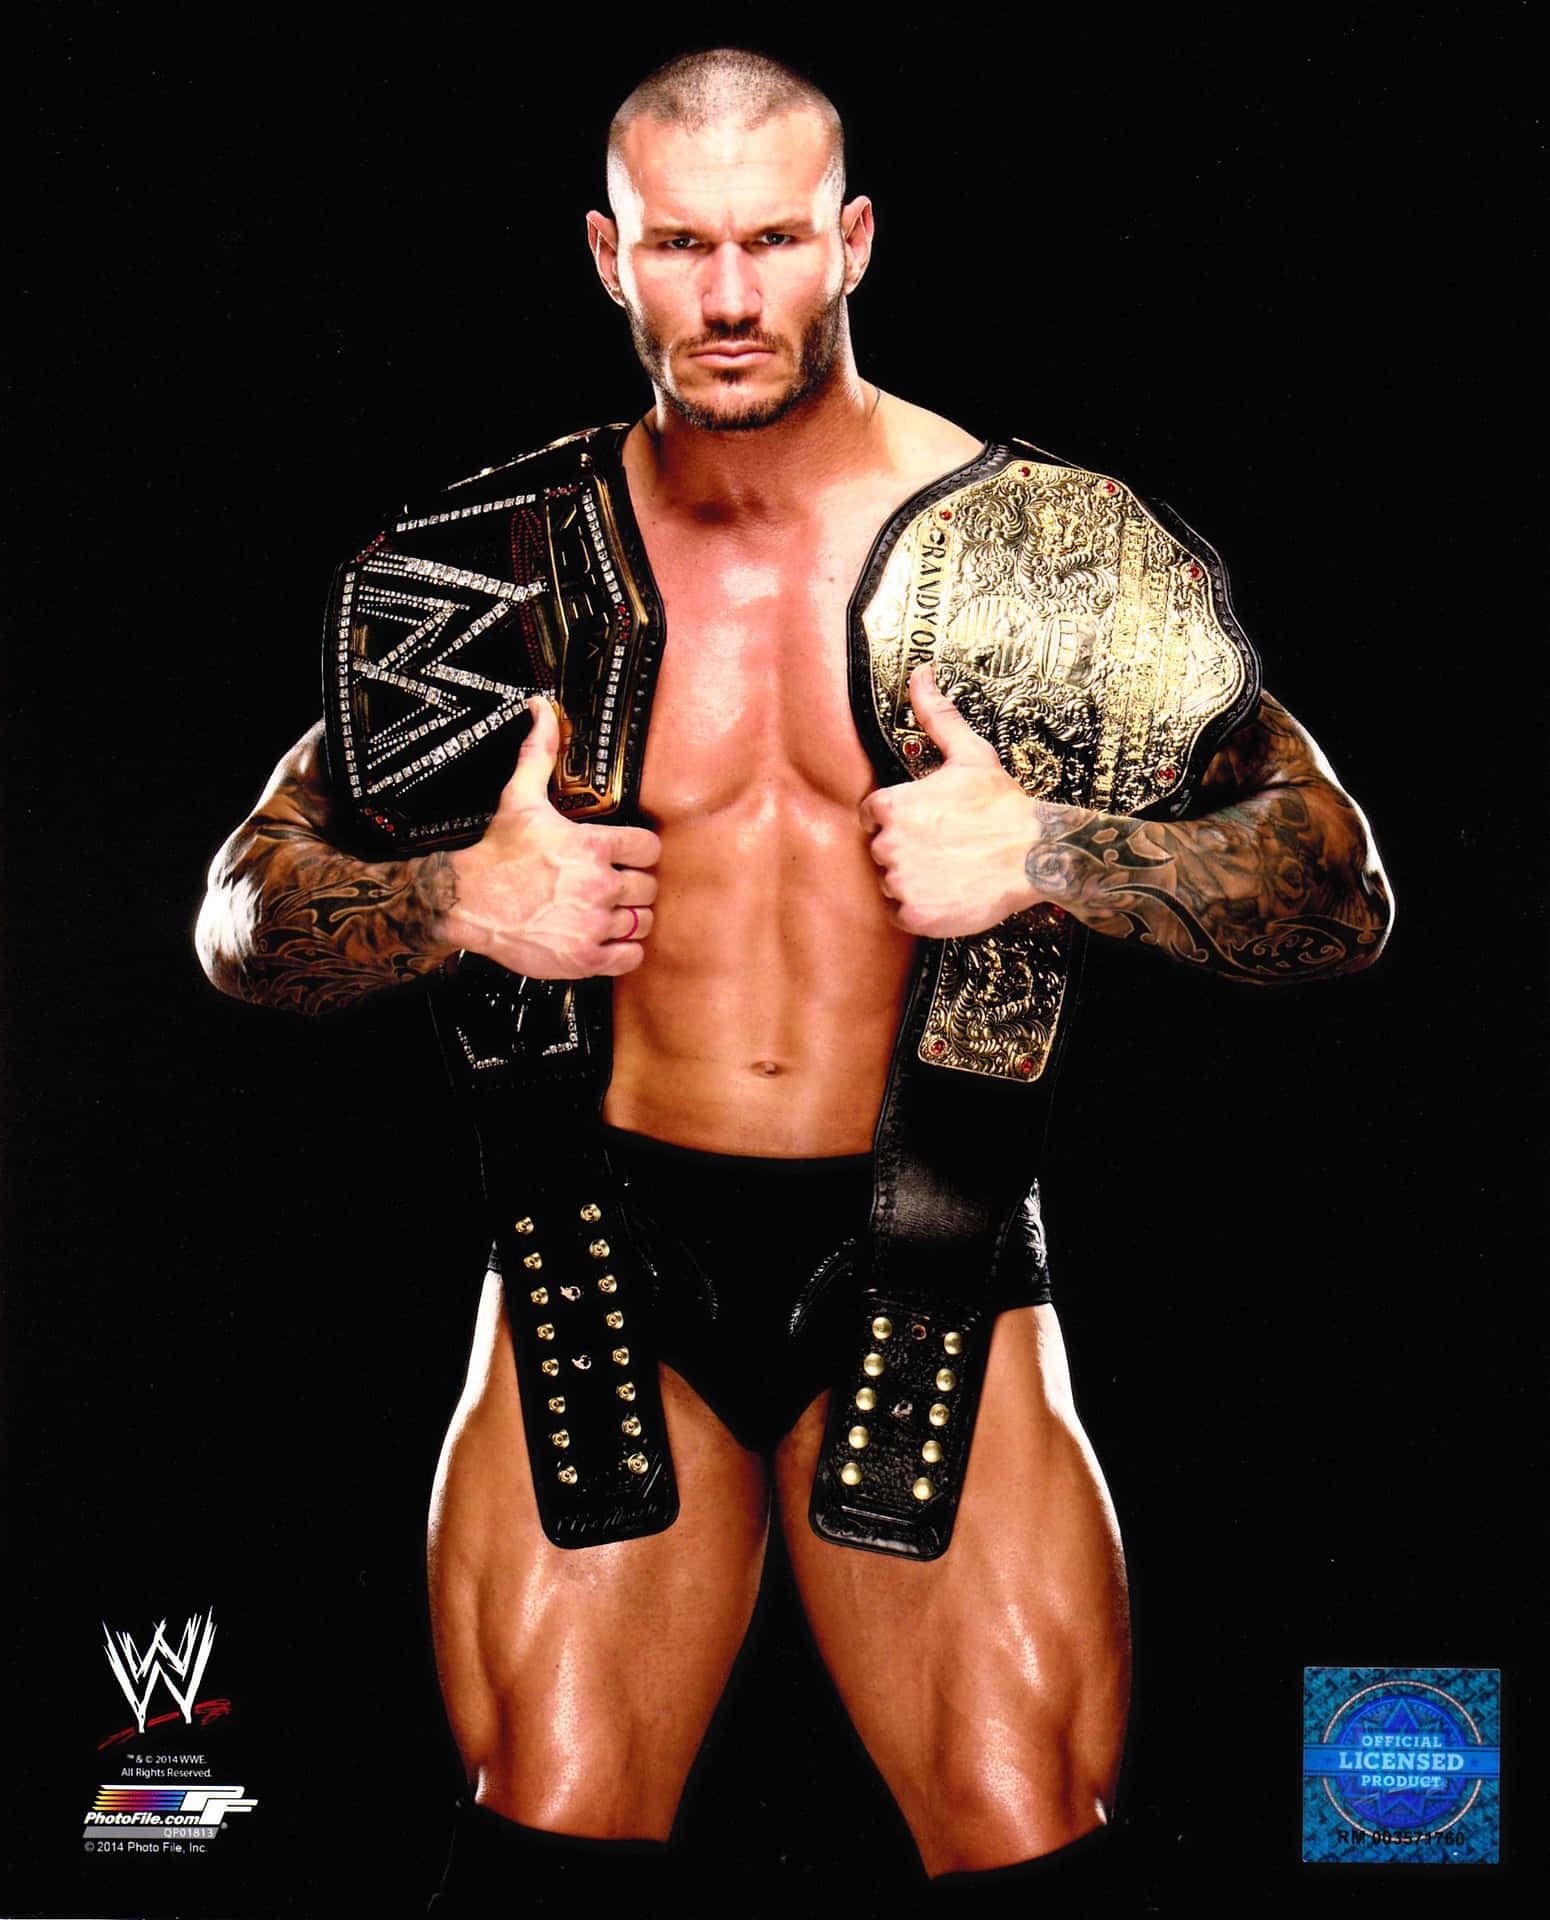 Wwe Wrestler John Cena Holding His Belts